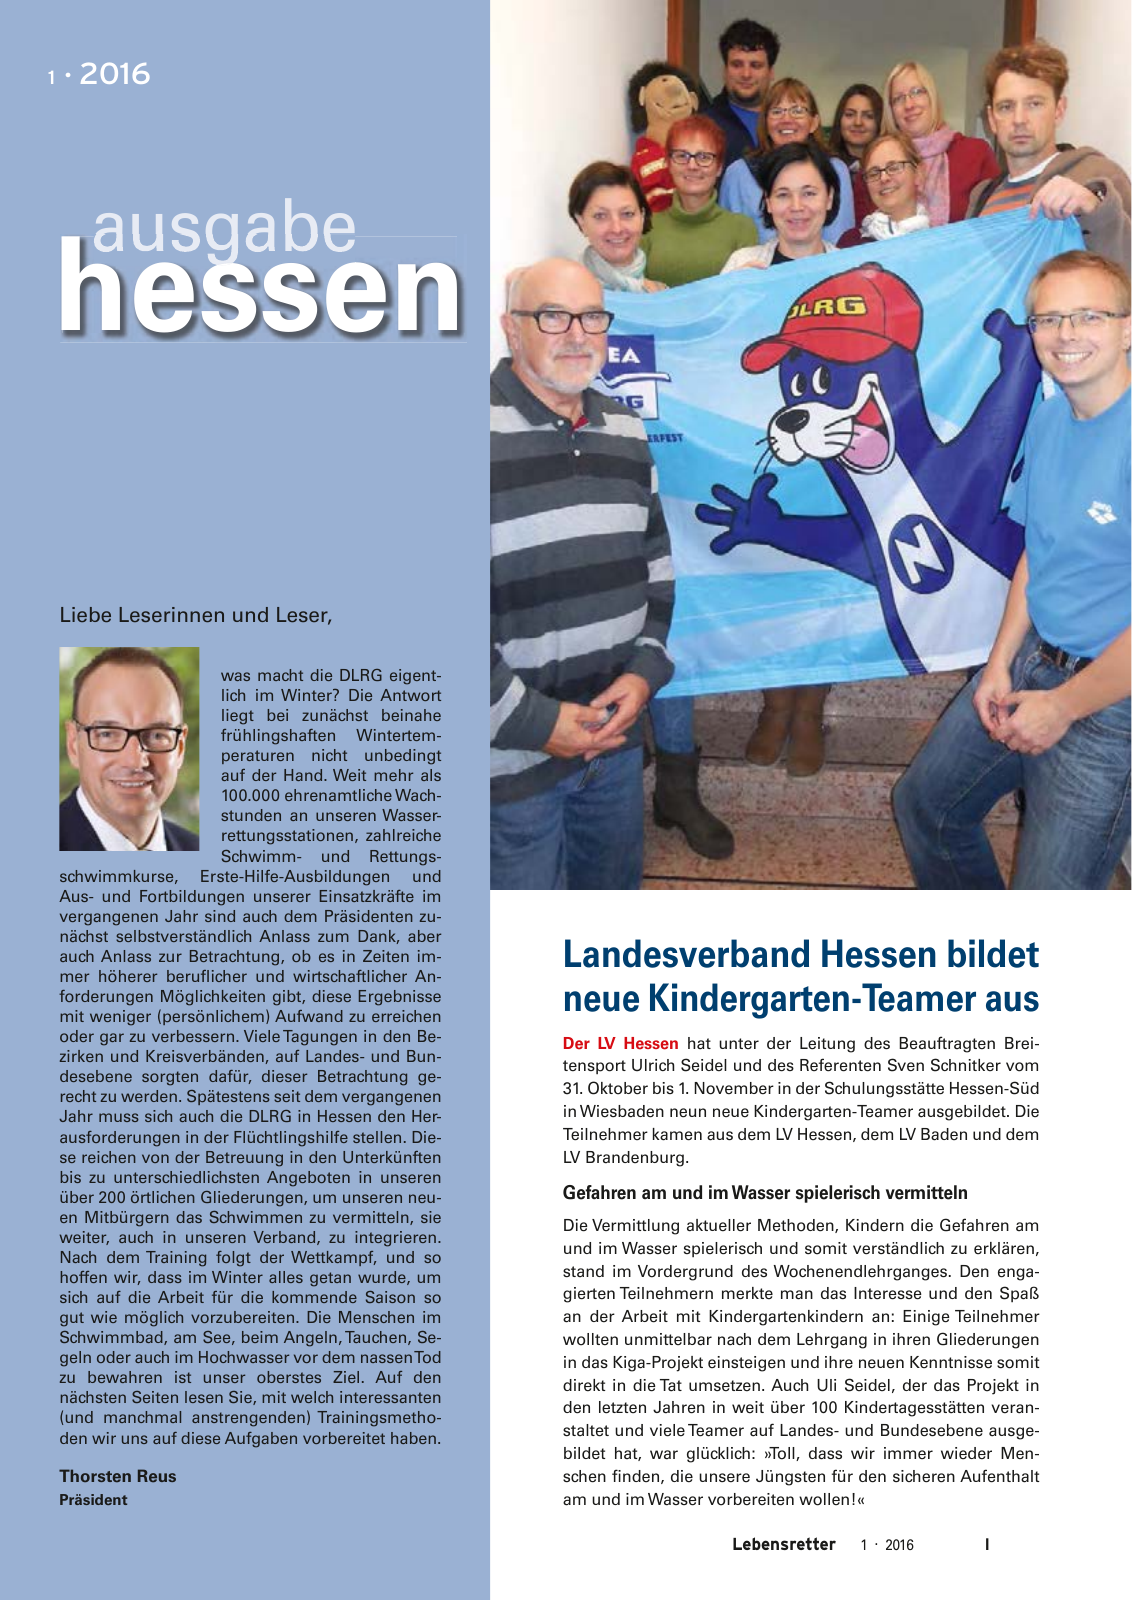 Vorschau Lebensretter 1/2016 - Regionalausgabe Hessen Seite 3